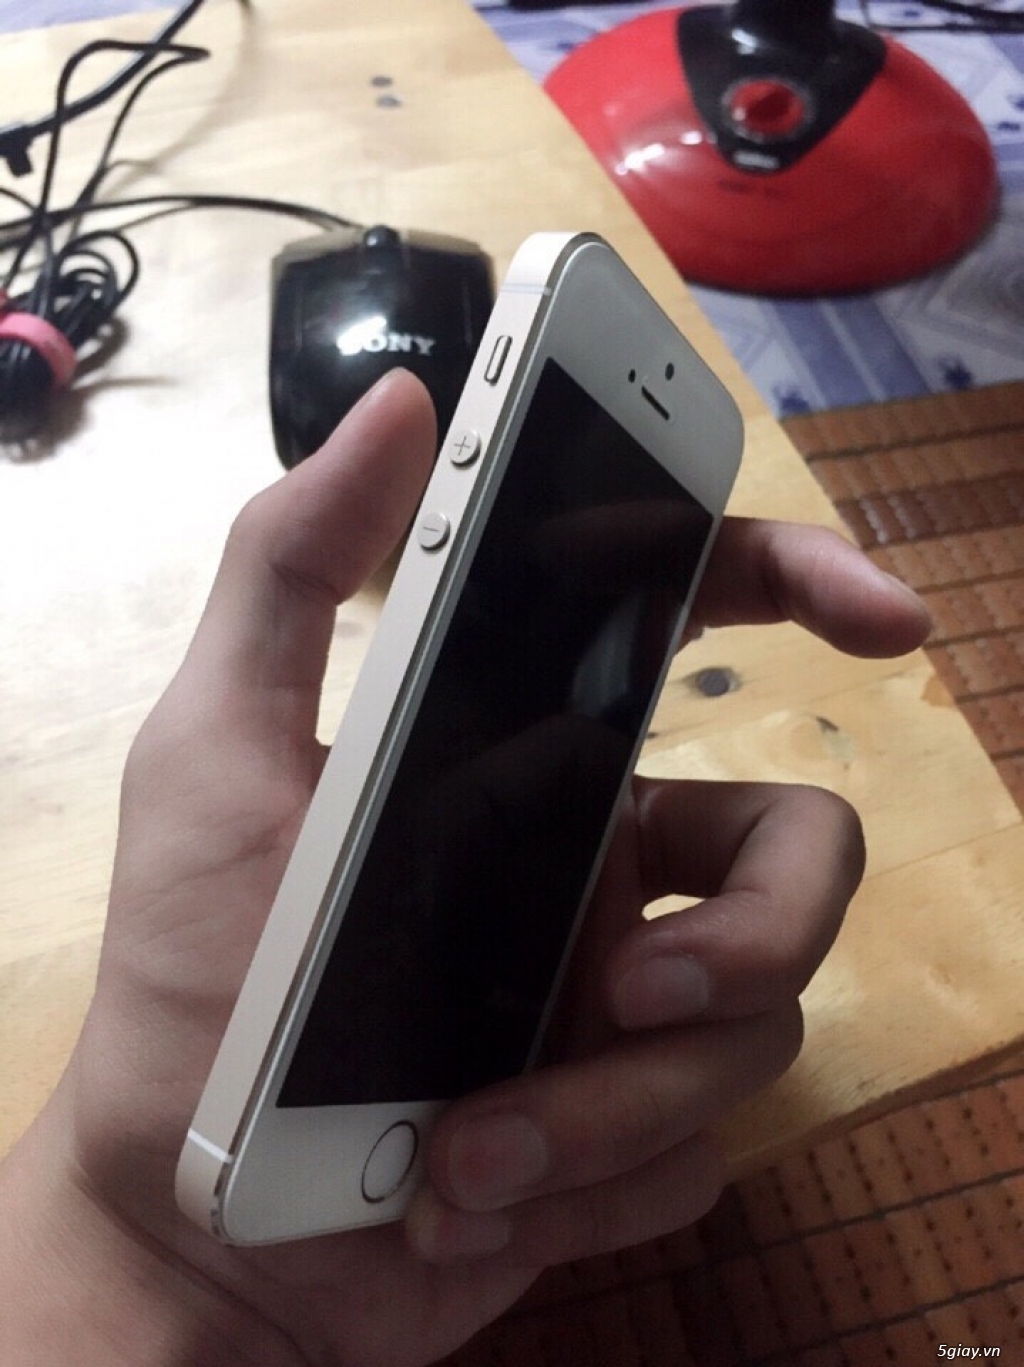 Iphone 5s 16G vàng World 99,8% lên sàn giá vàng 3 củ (mvt) - 4